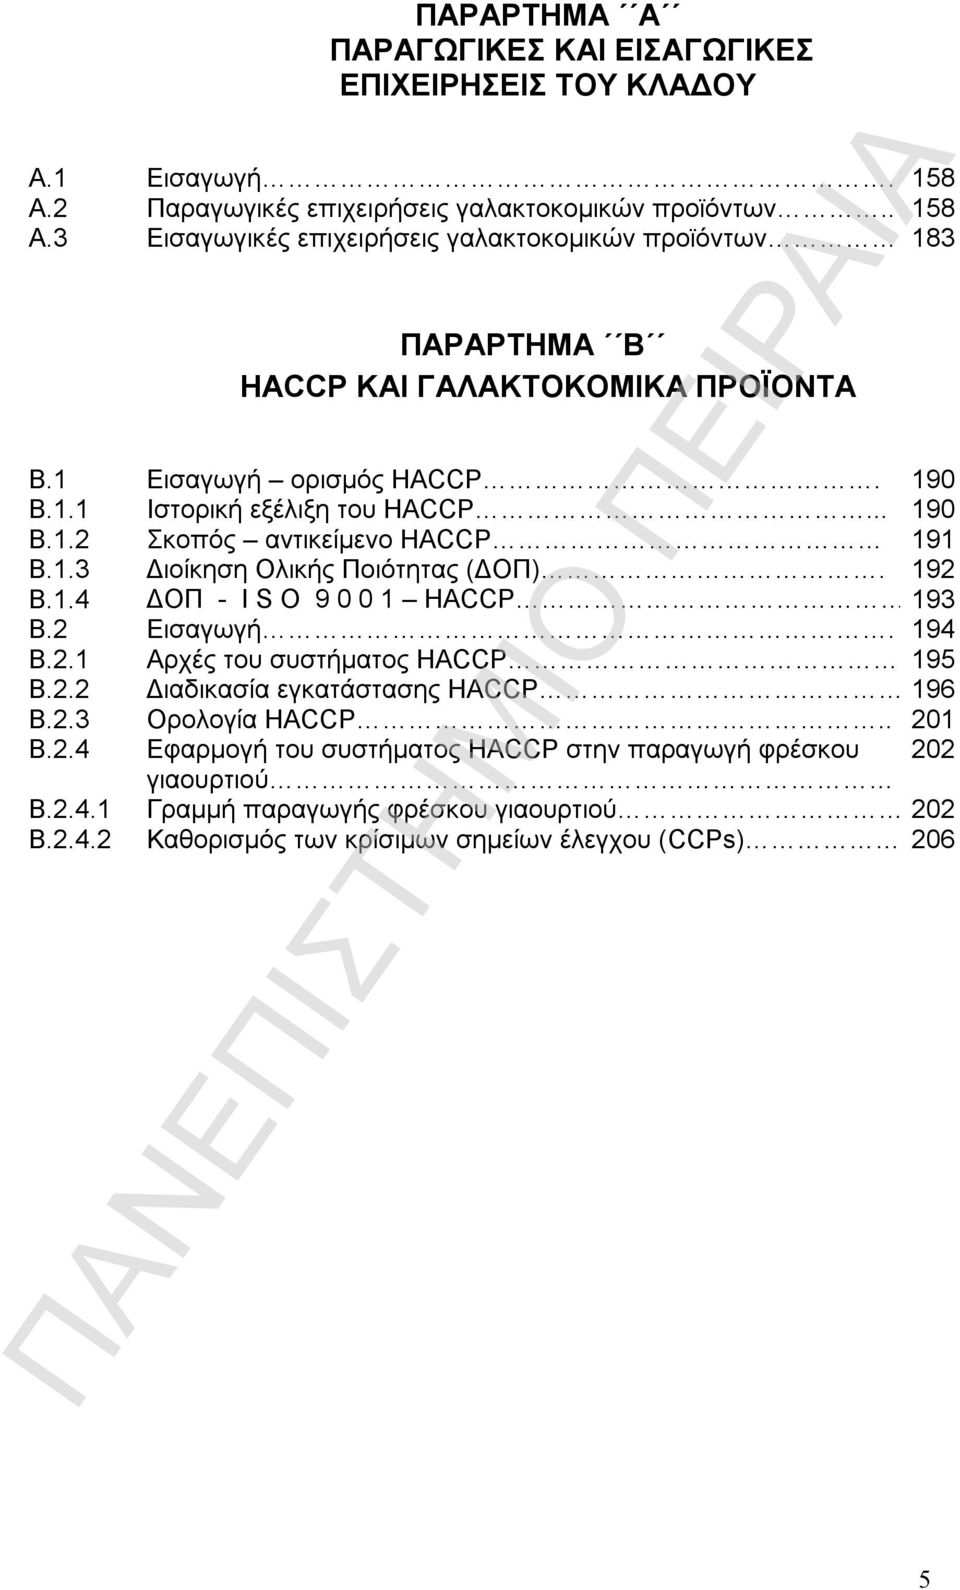 1 Εισαγωγή ορισμός HACCP. 190 Β.1.1 Ιστορική εξέλιξη του HACCP... 190 Β.1.2 Σκοπός αντικείμενο HACCP 191 Β.1.3 Διοίκηση Ολικής Ποιότητας (ΔΟΠ). 192 Β.1.4 ΔΟΠ - Ι S O 9 0 0 1 HACCP 193 Β.